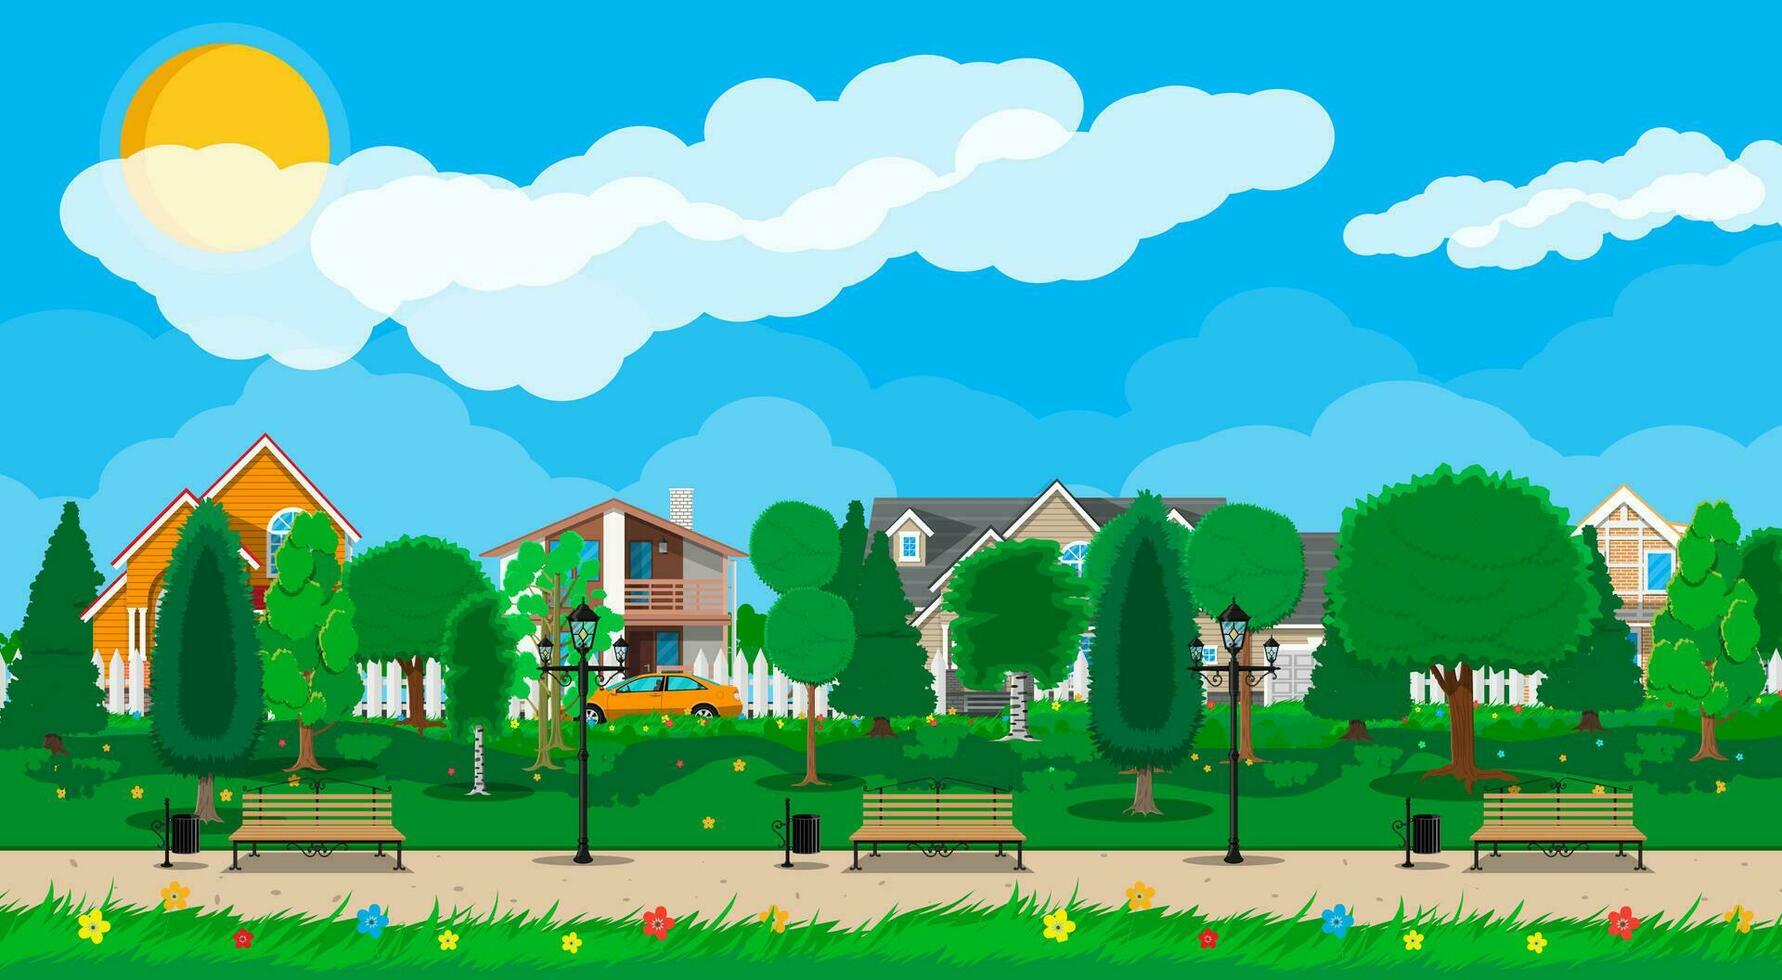 suburbio concepto, de madera banco, calle lámpara, residuos compartimiento en cuadrado. paisaje urbano con edificios y arboles cielo con nubes y Dom. ocio hora en verano ciudad parque. vector ilustración en plano estilo